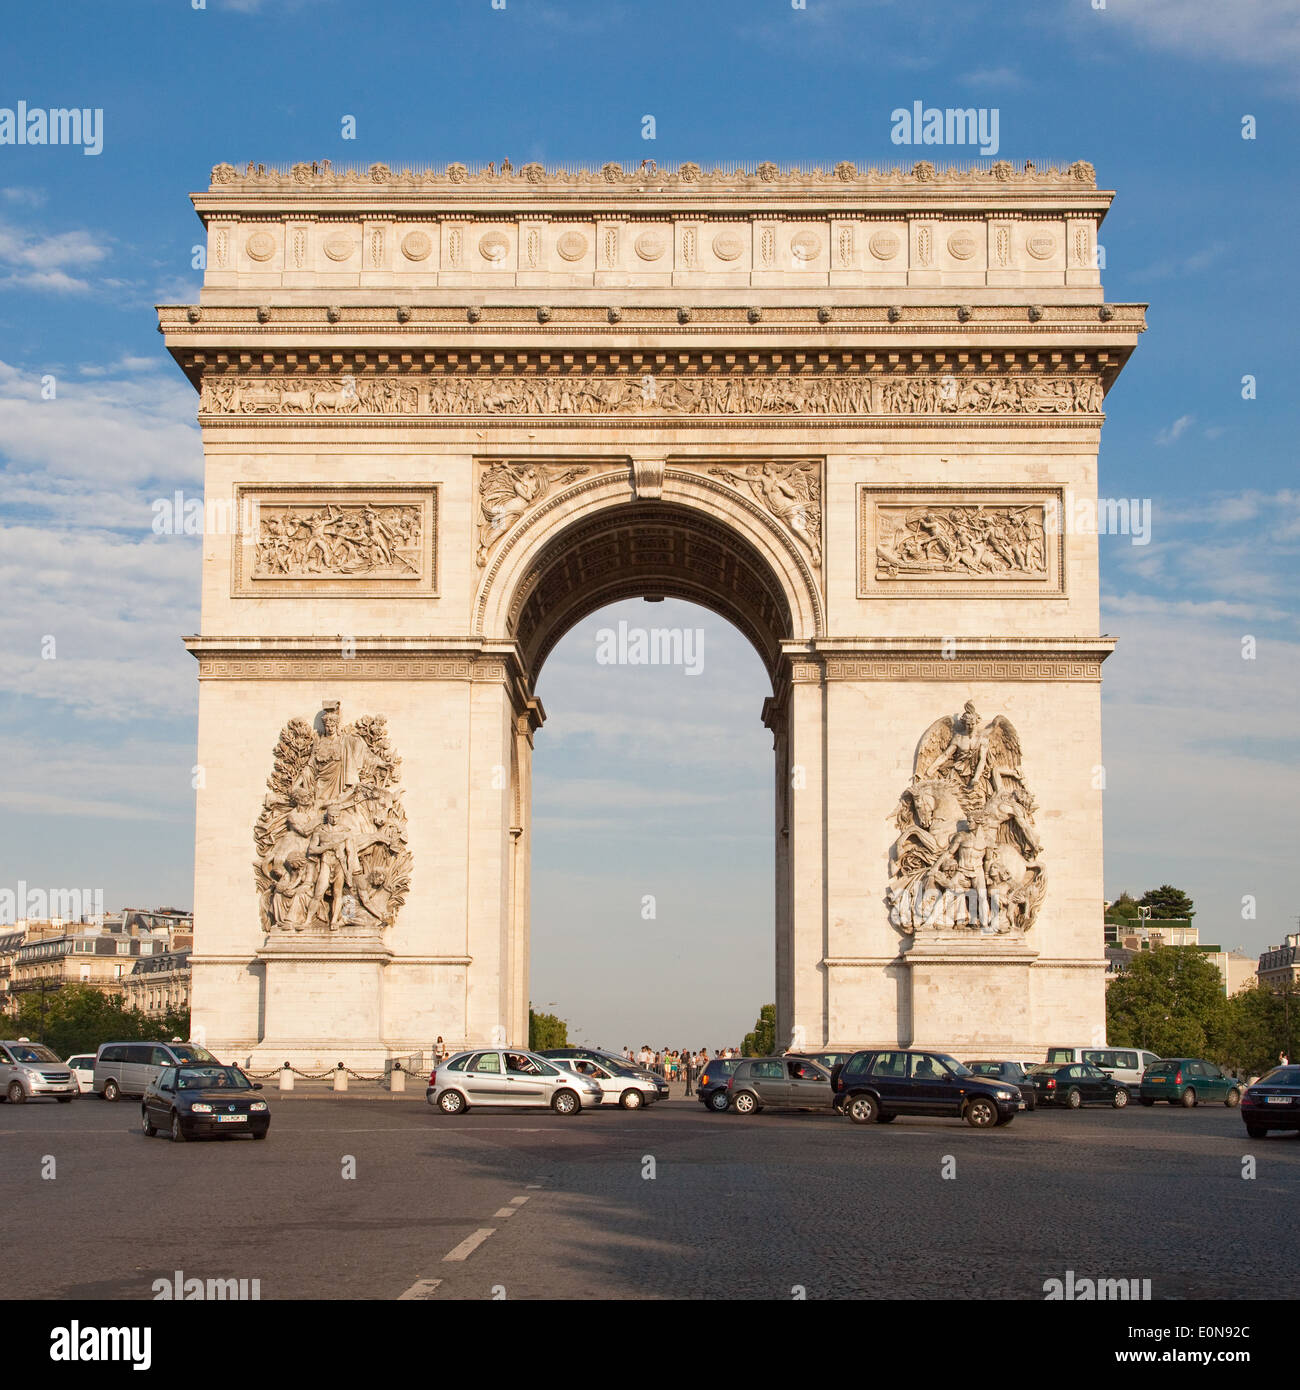 Arc de Triomphe an der Champs-Elysees, Paris, Frankreich - Arc de Triomphe at Champs-Elysees, France, Paris Stock Photo